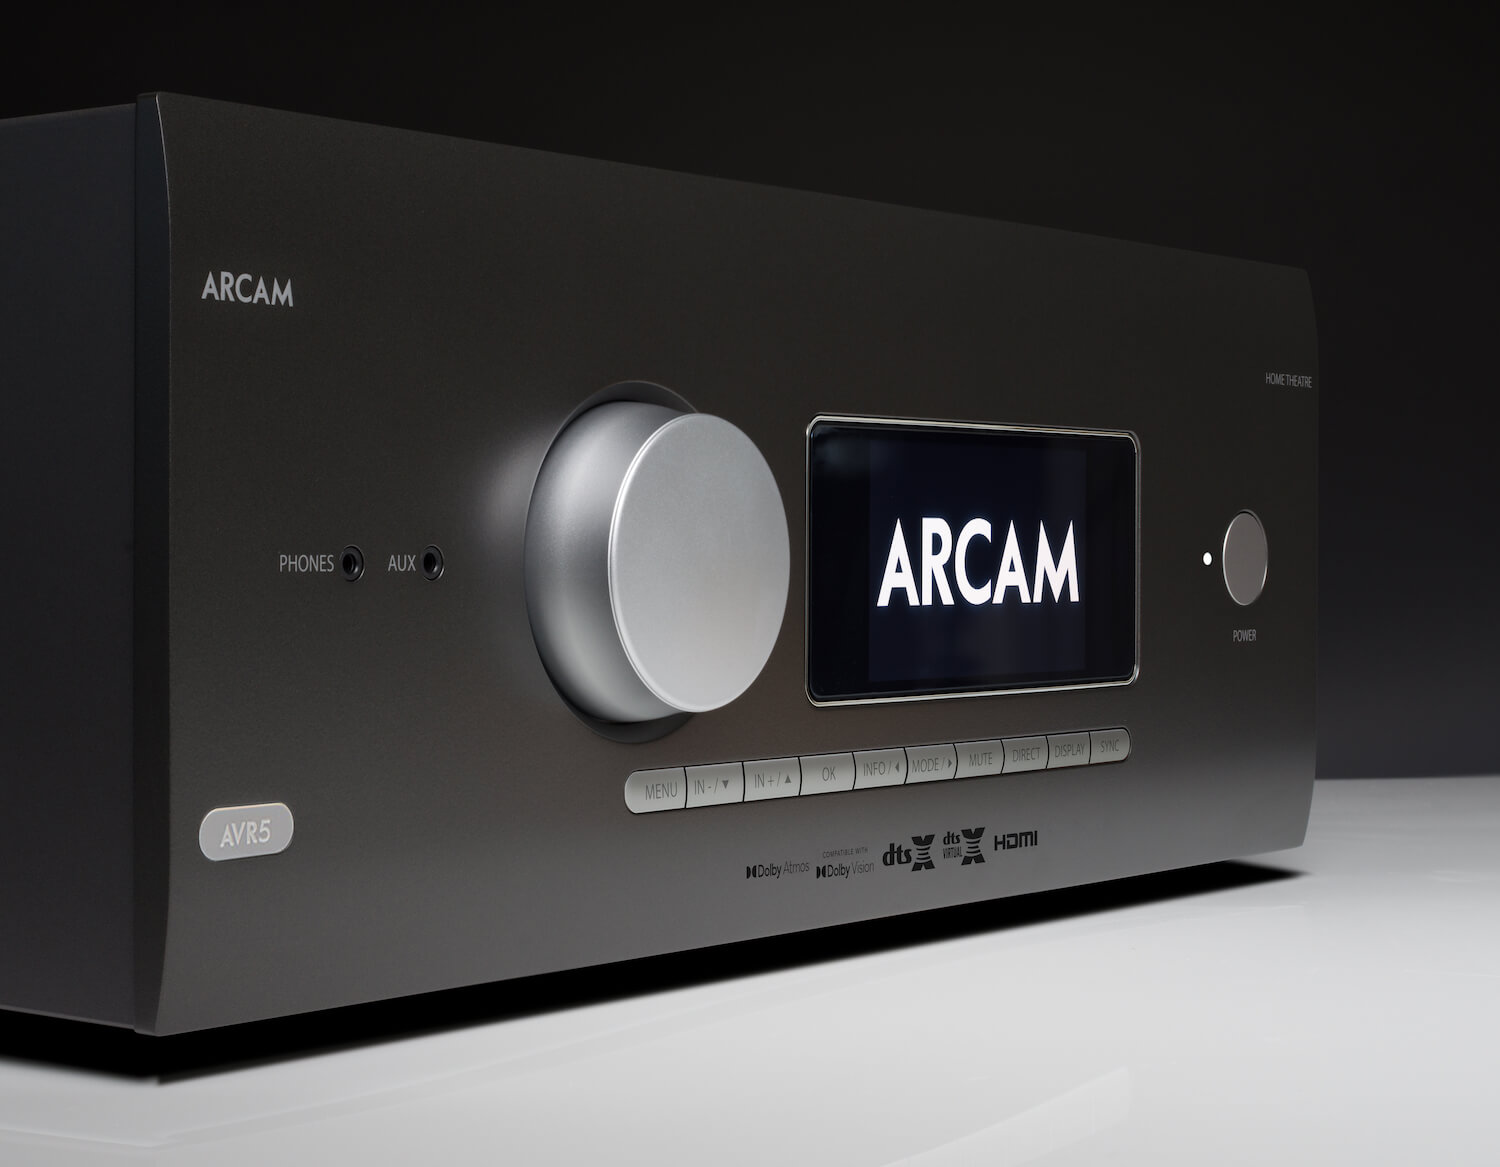 Arcam AVR5 AV receiver